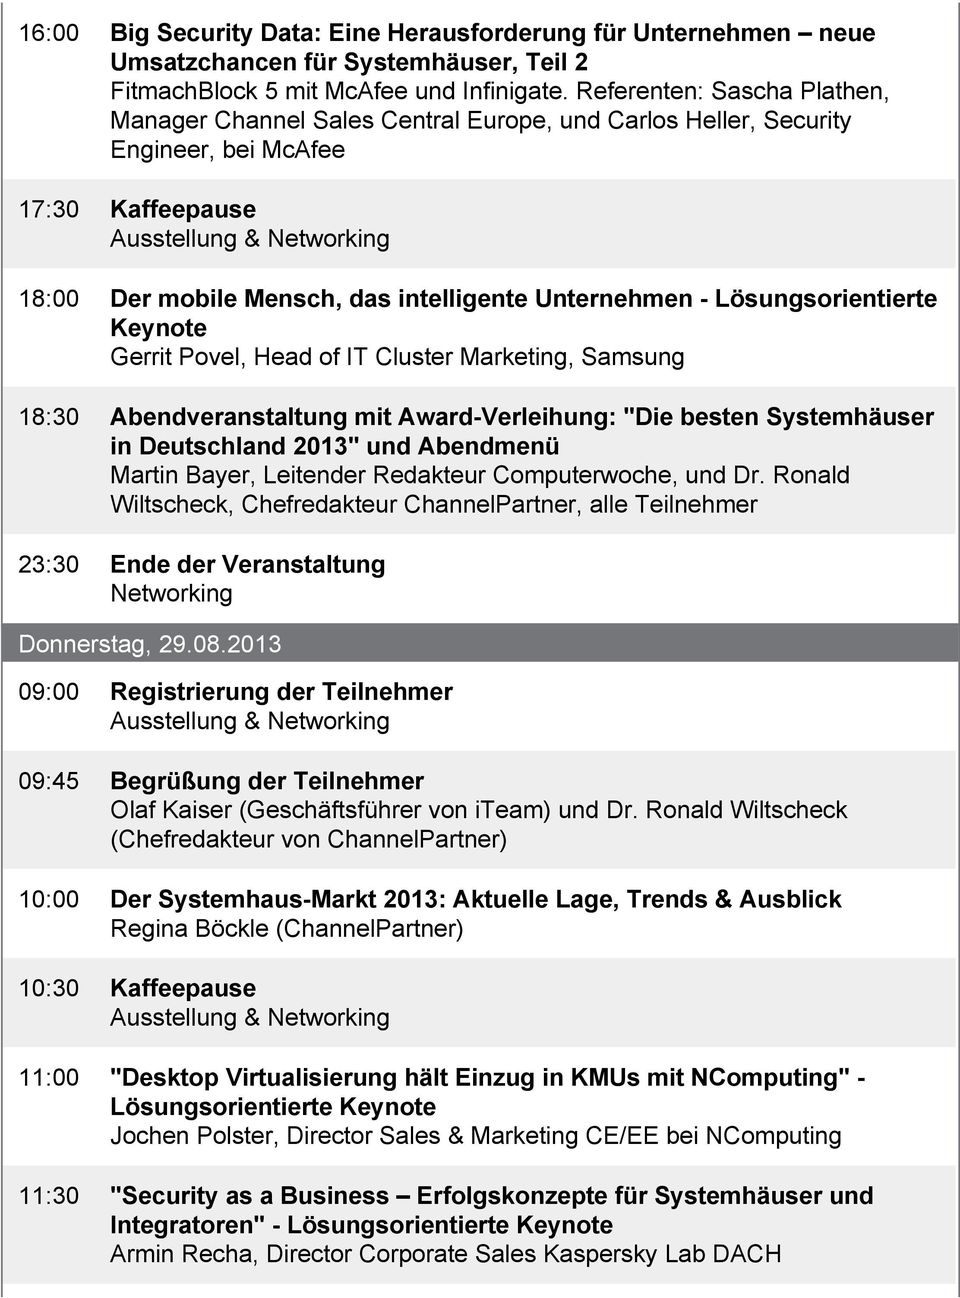 Lösungsorientierte Keynote Gerrit Povel, Head of IT Cluster Marketing, Samsung 18:30 Abendveranstaltung mit Award-Verleihung: "Die besten Systemhäuser in Deutschland 2013" und Abendmenü Martin Bayer,